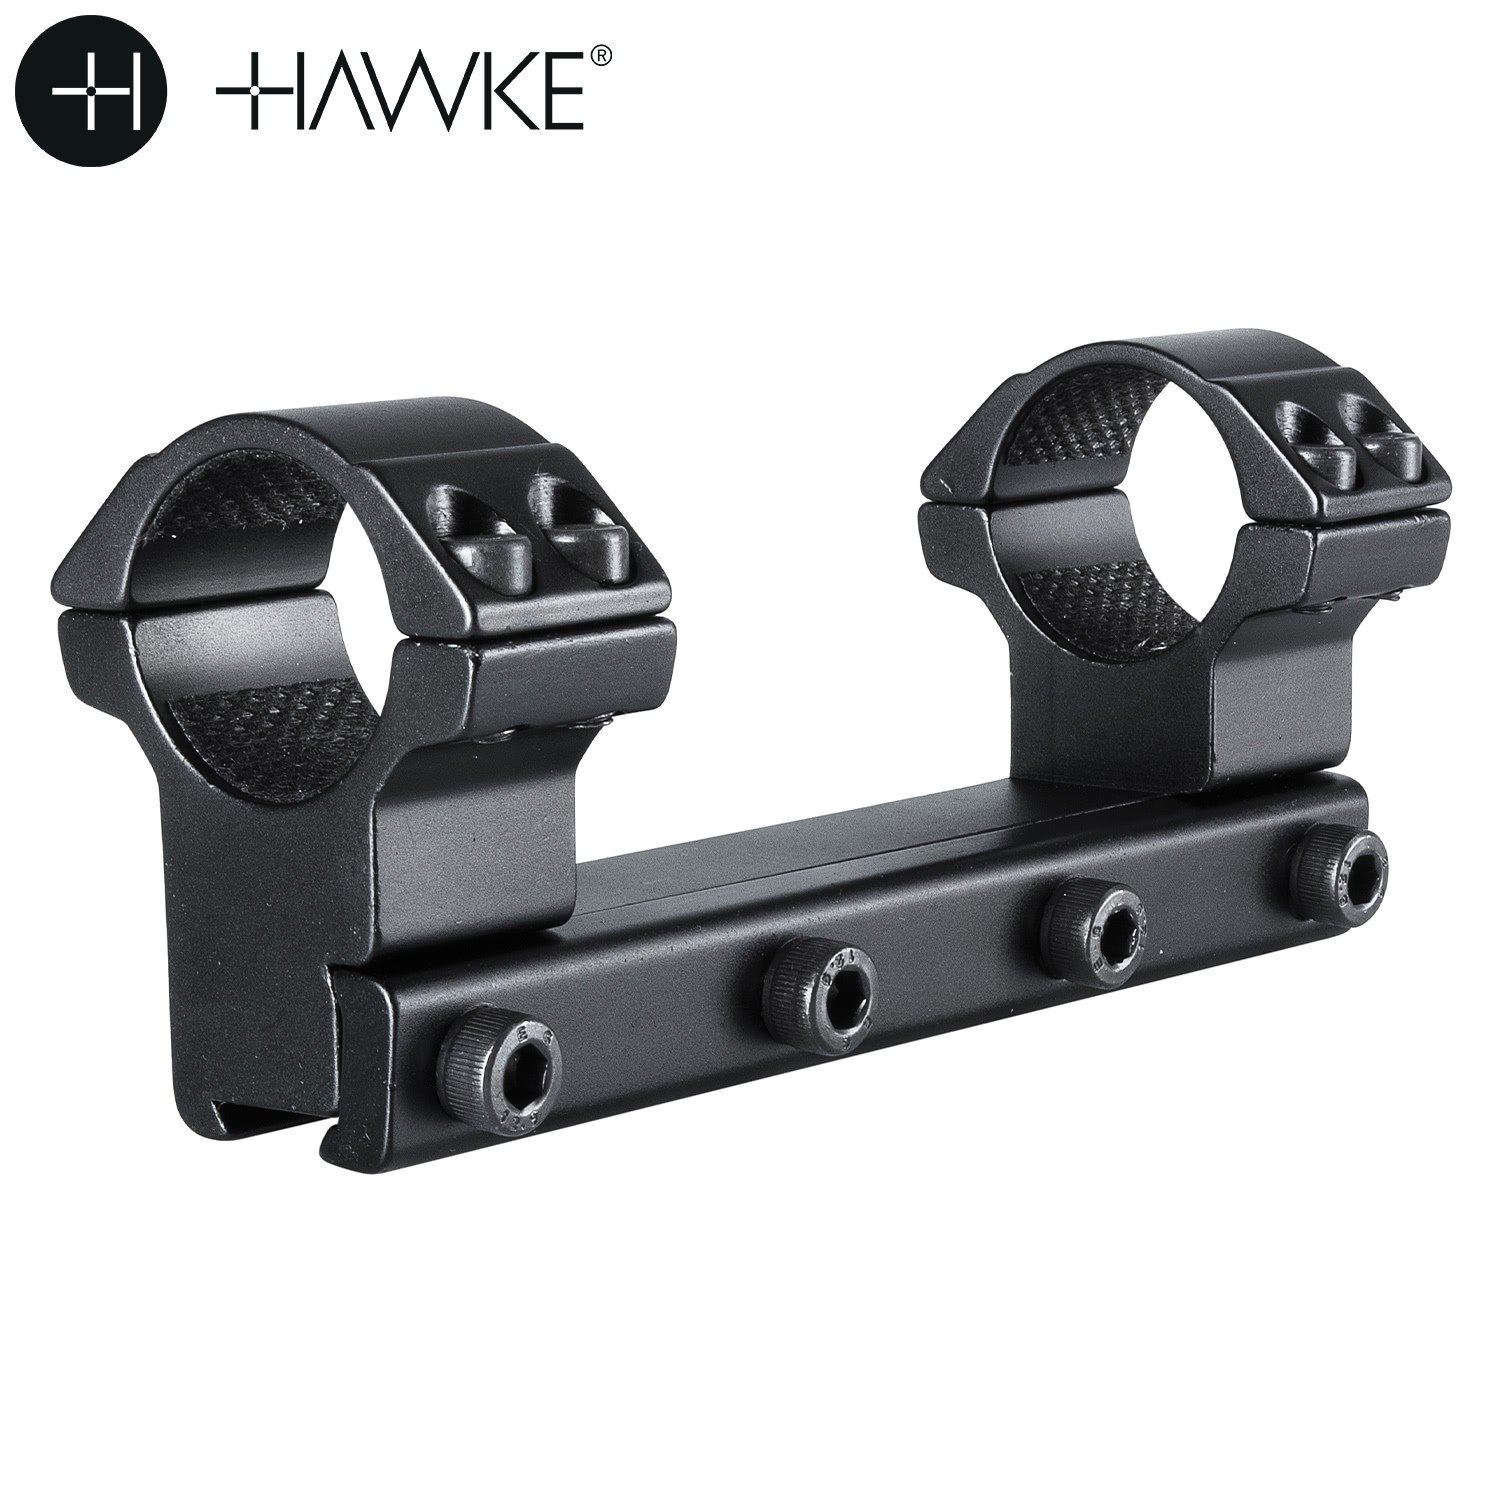 HAWKE 1PC High Mount 9-11mm